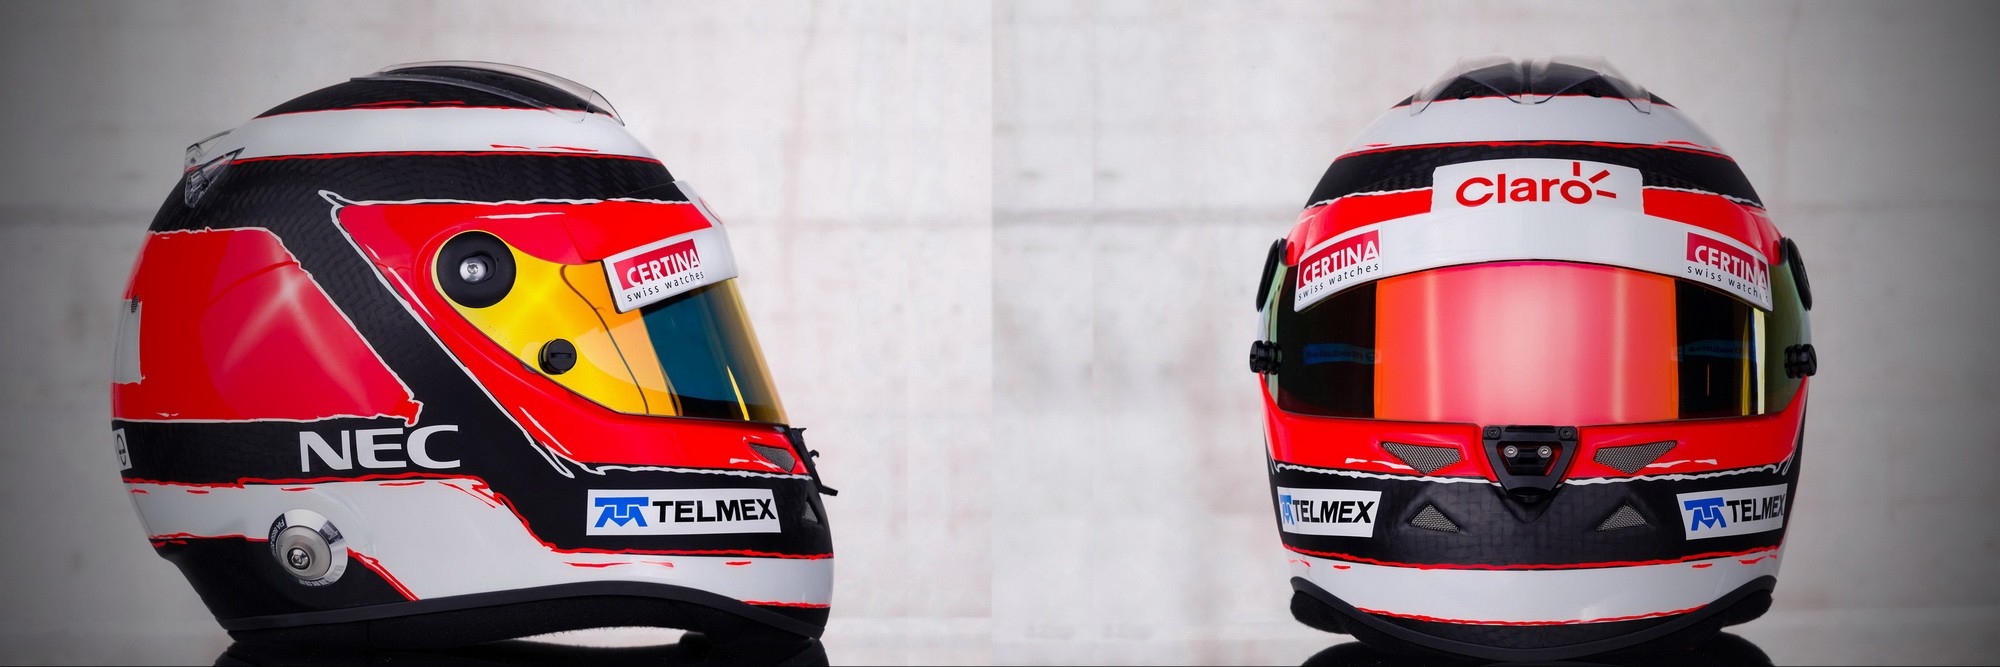 Шлем Нико Хюлькенберга на сезон 2013 года | 2013 helmet of Nico Hulkenberg